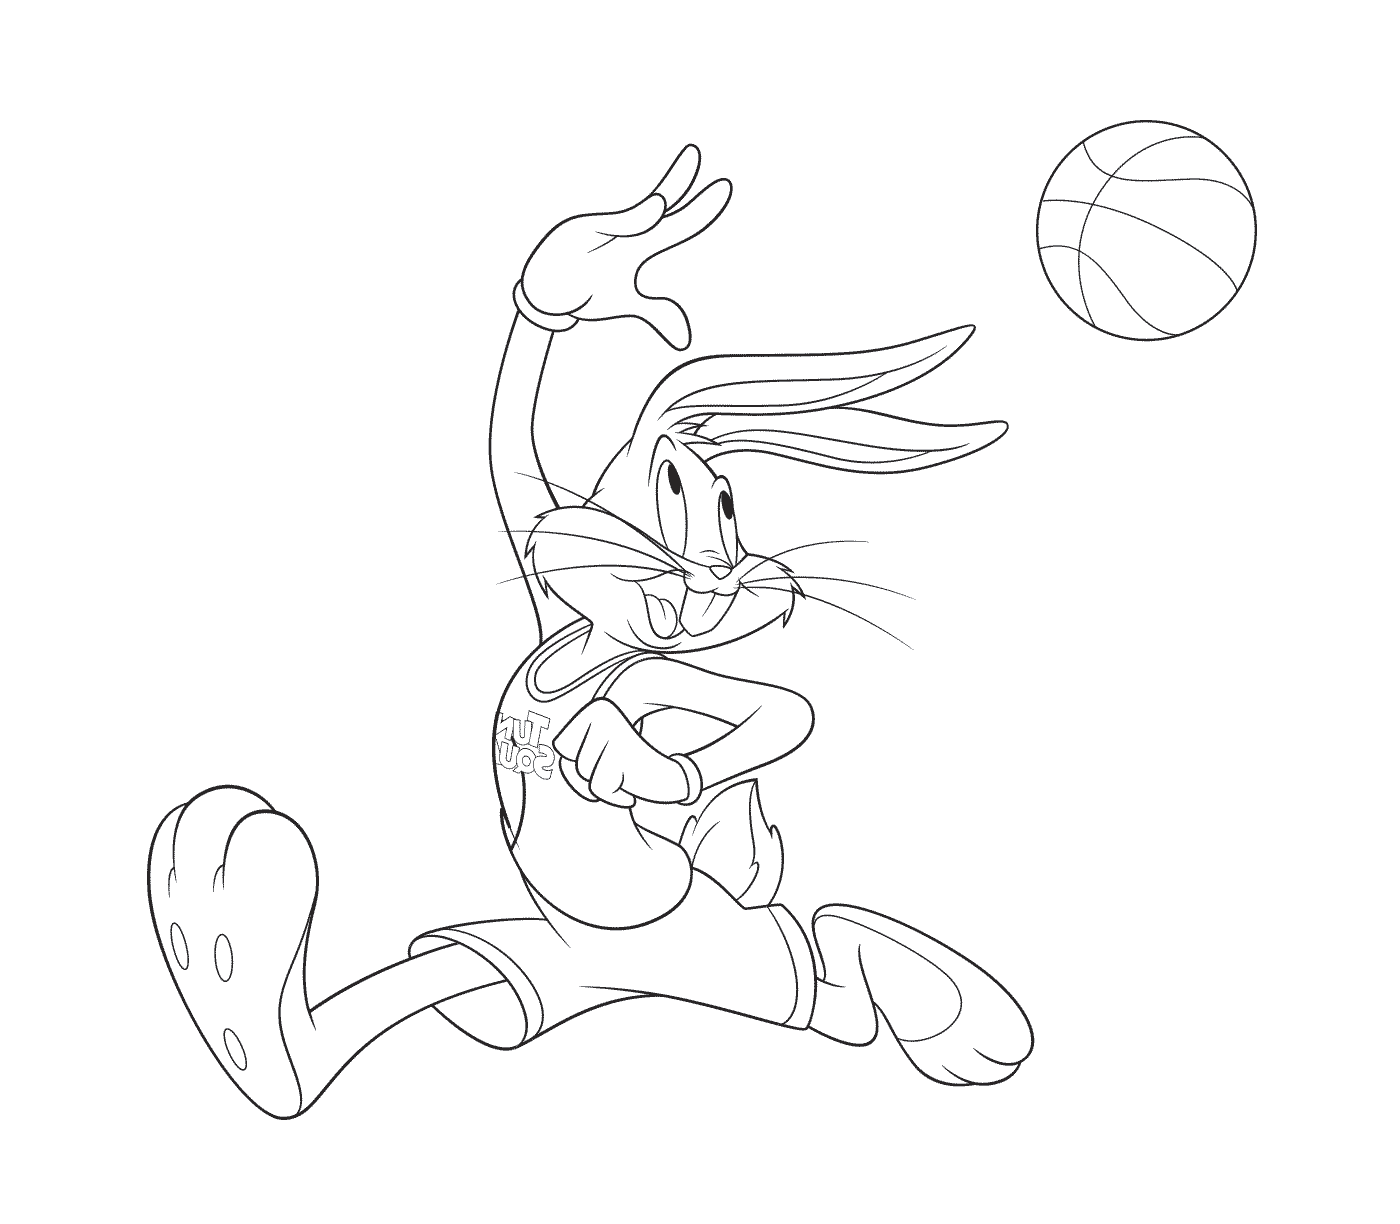  Conejo jugando baloncesto 